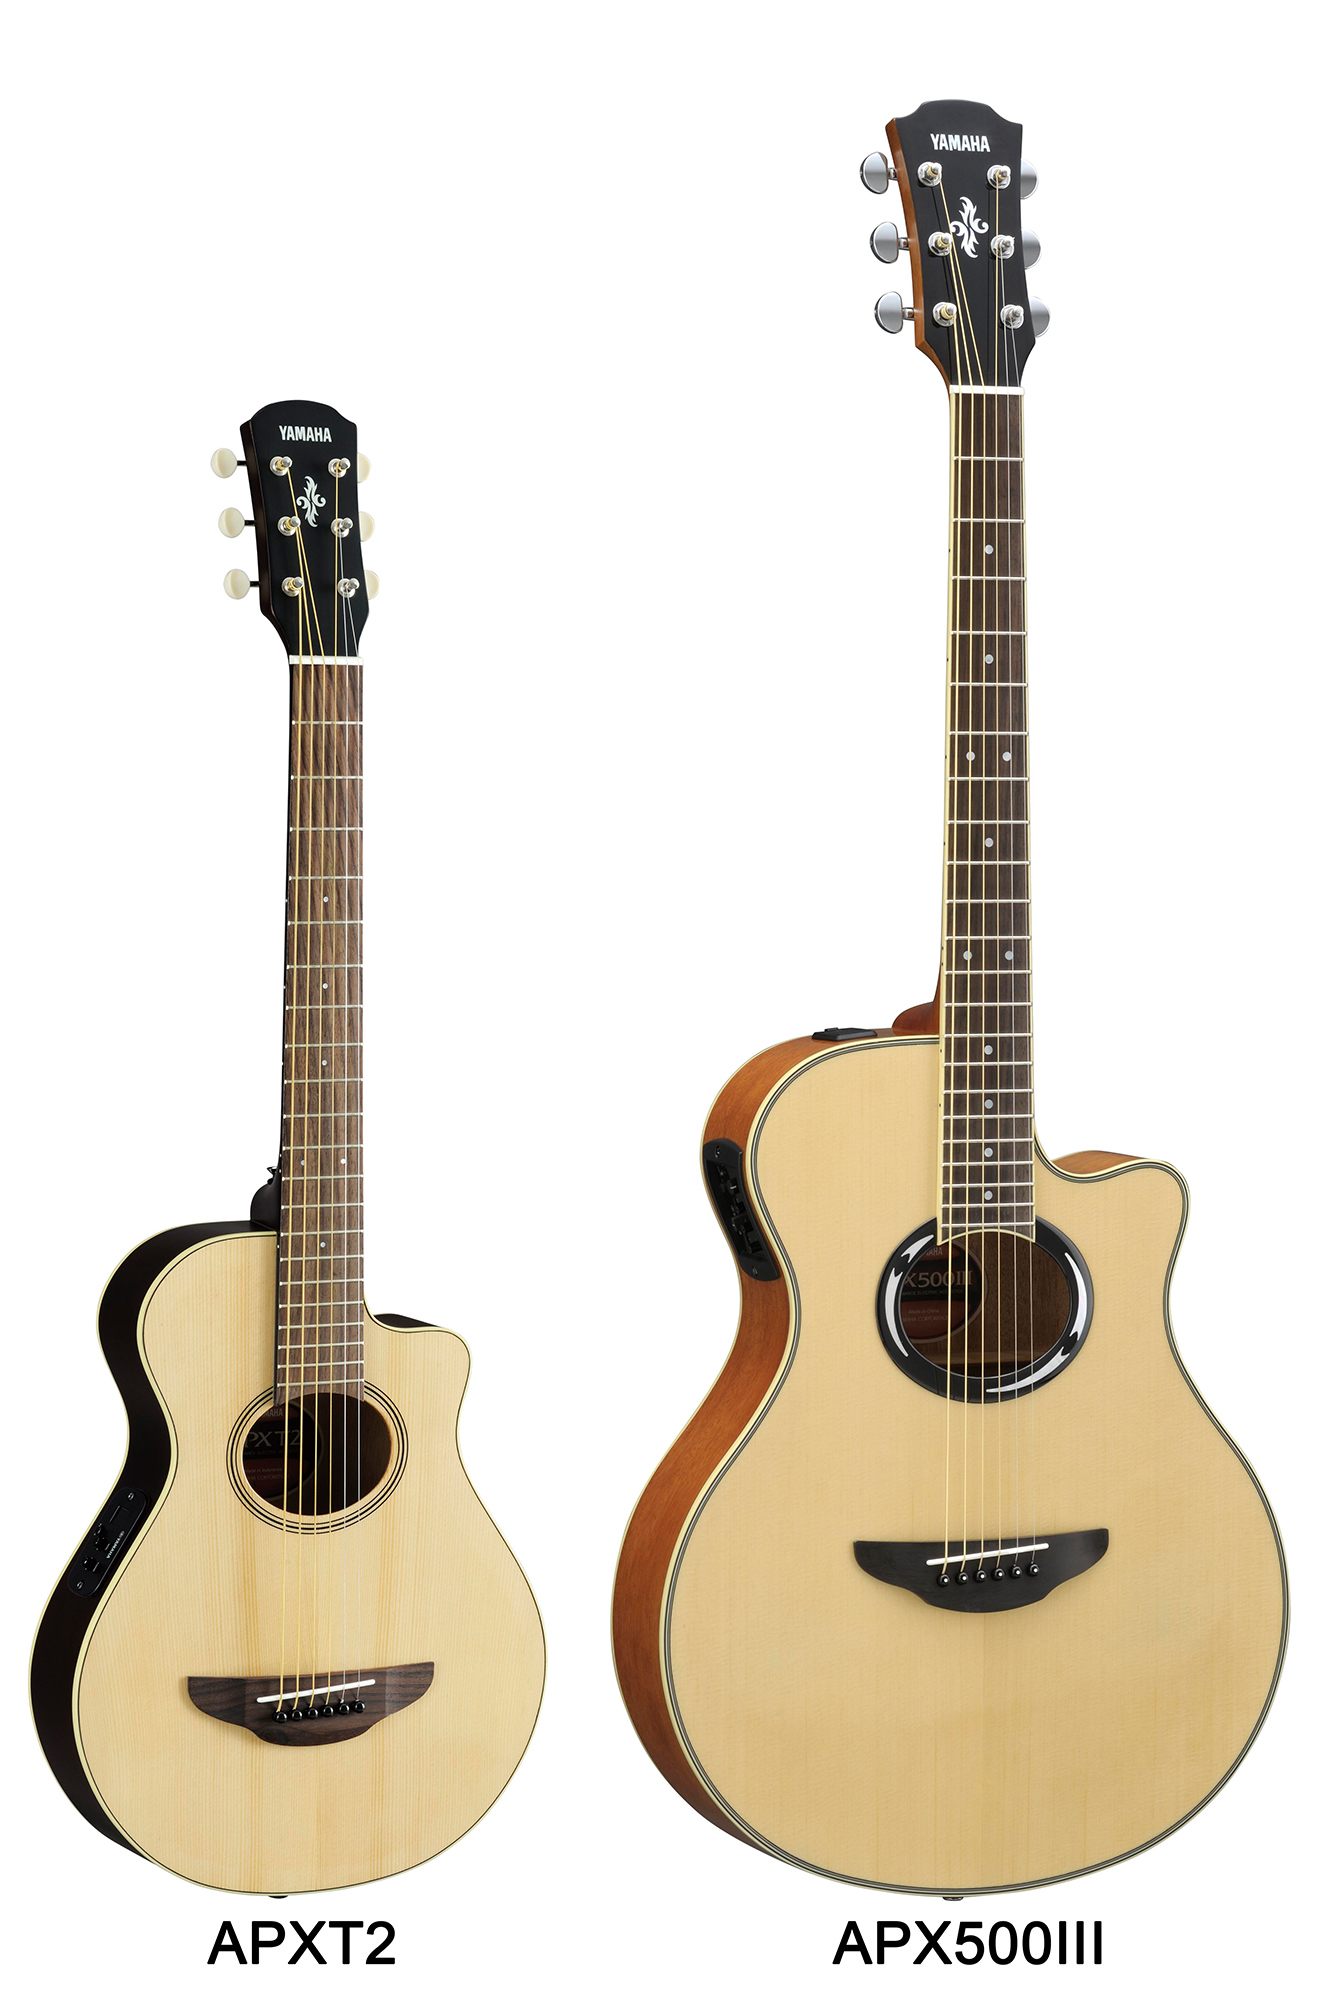 APXT2 - Features - Acoustic Guitars - Guitars, Basses, & Amps 